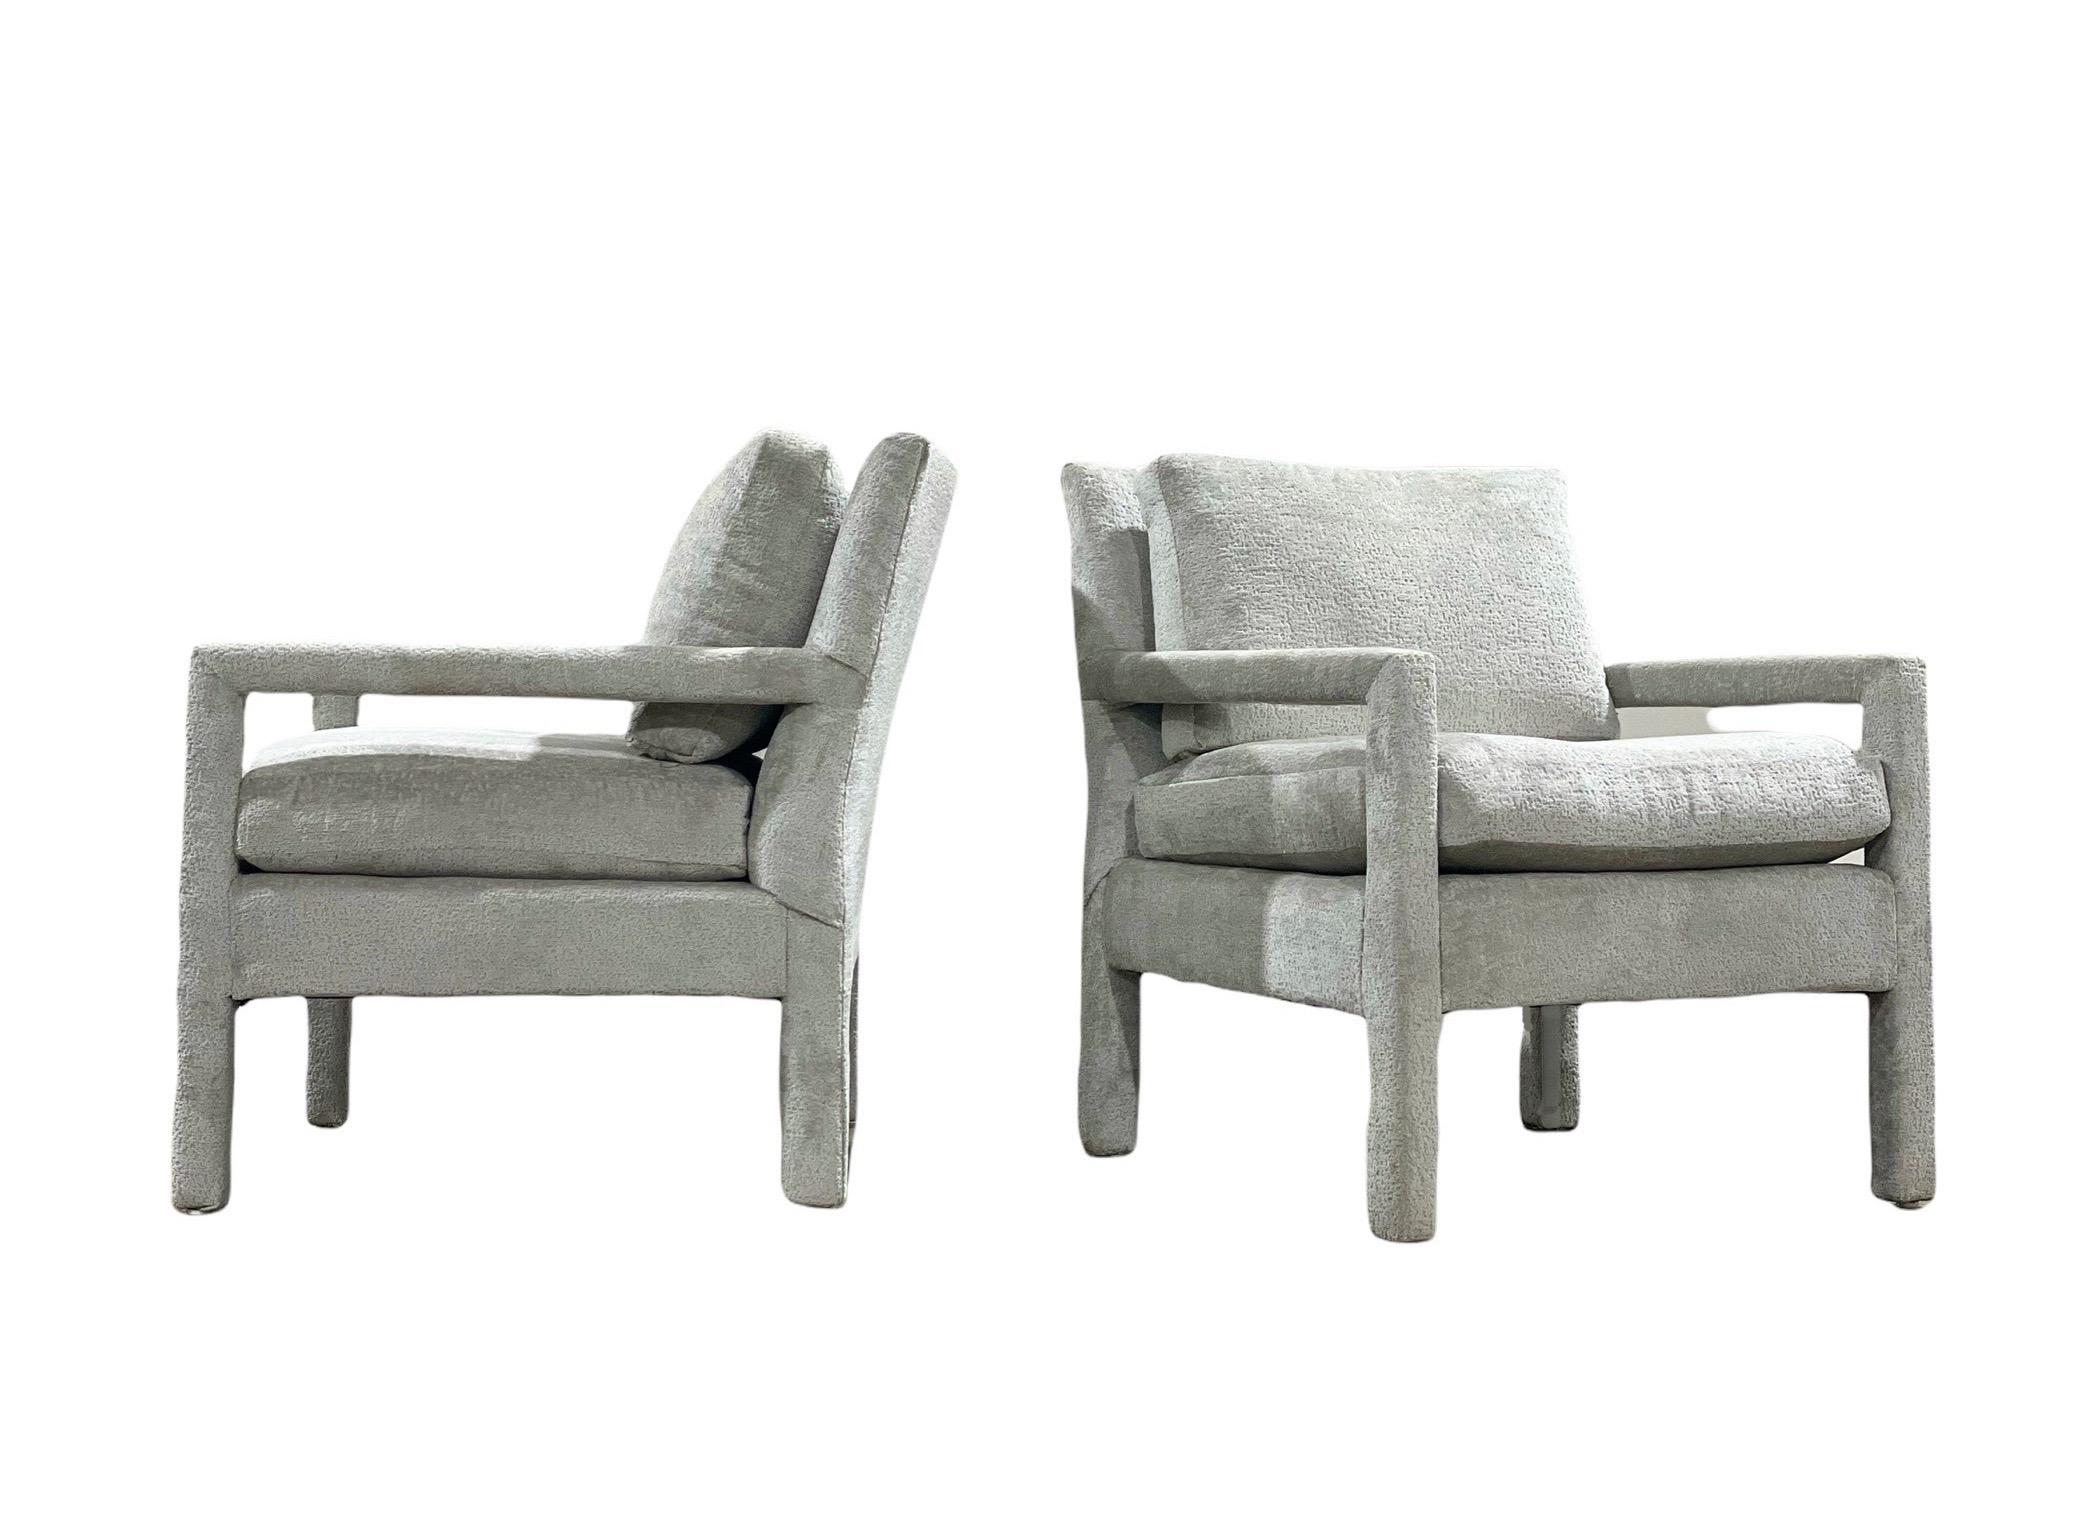 Klassisches Paar Armlehnstühle im Parsons-Stil von Bernhardt aus der Mitte der 1970er Jahre. Robuste amerikanische Handwerkskunst und ein zeitloser Designklassiker. Die vollständige Restaurierung dieses Paares durch unsere hauseigenen